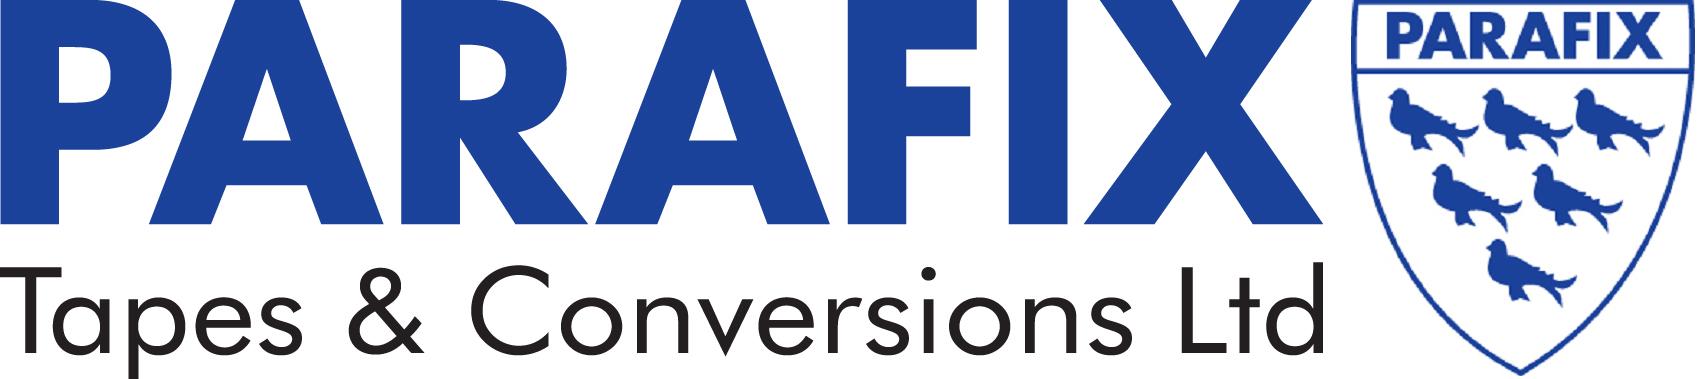 Parafix Tapes & Conversions Ltd